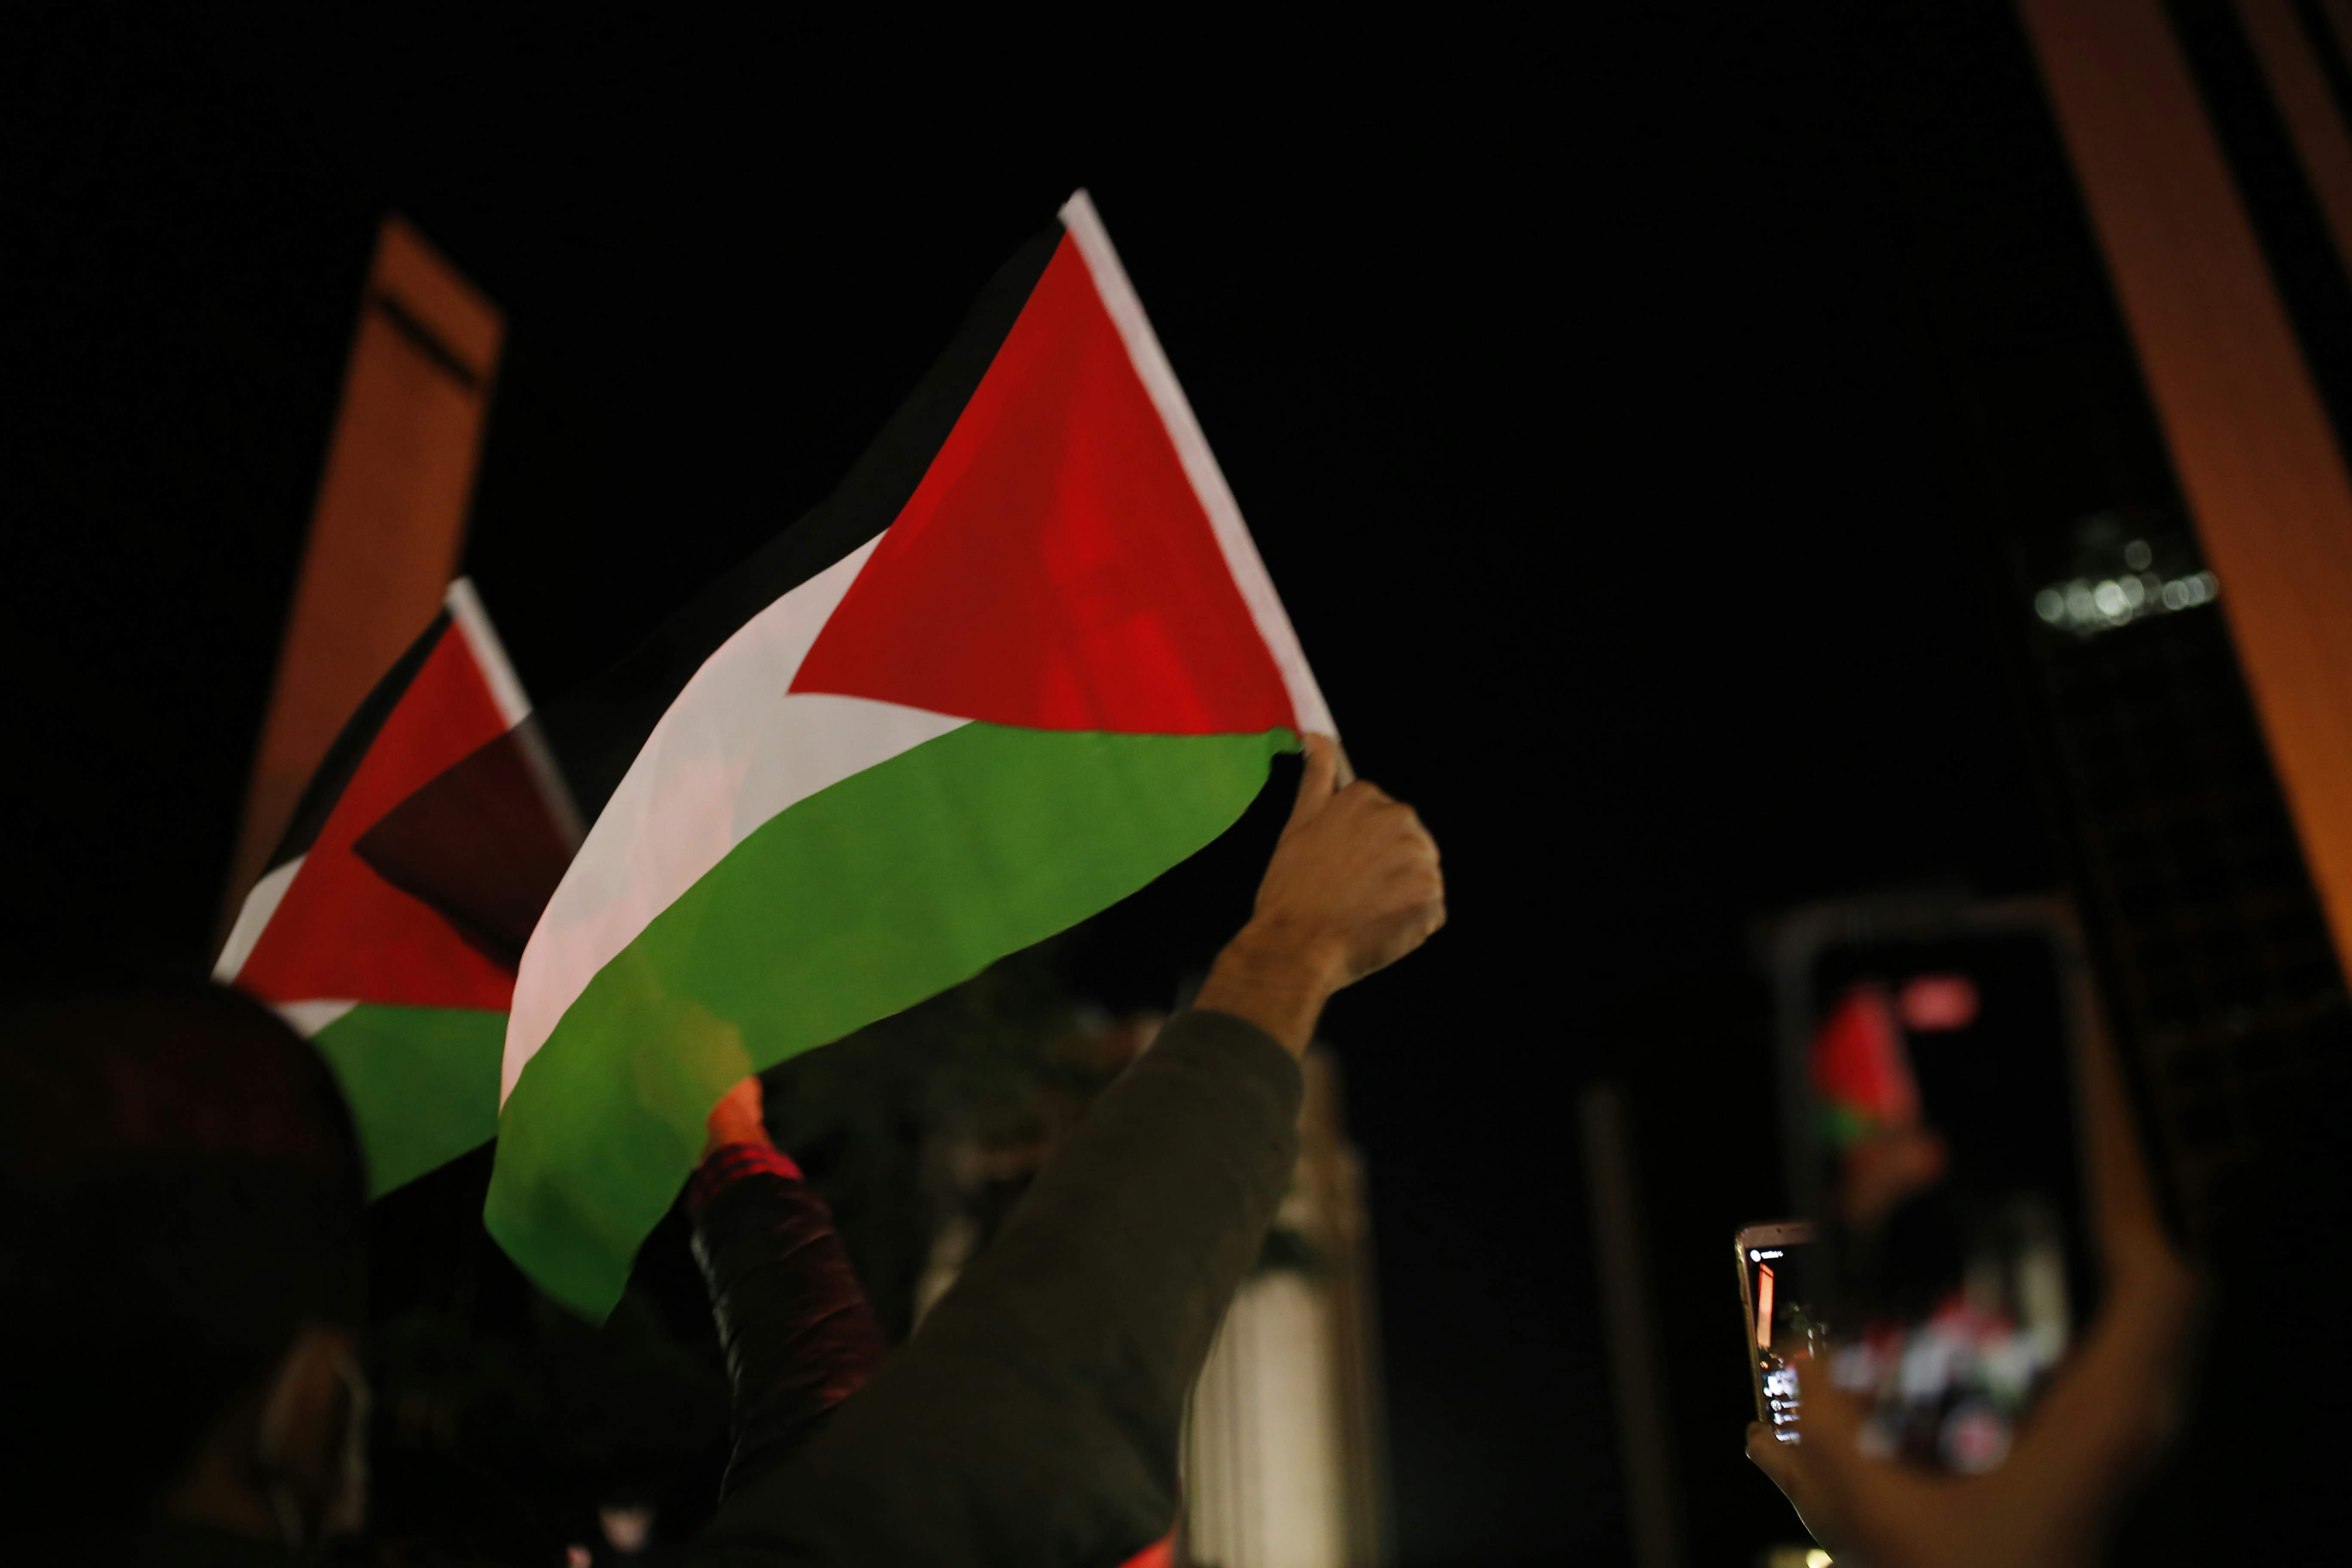 Les Nacions Unides volen resoldre l'admissió de Palestina a l'abril: "És una fita històrica"